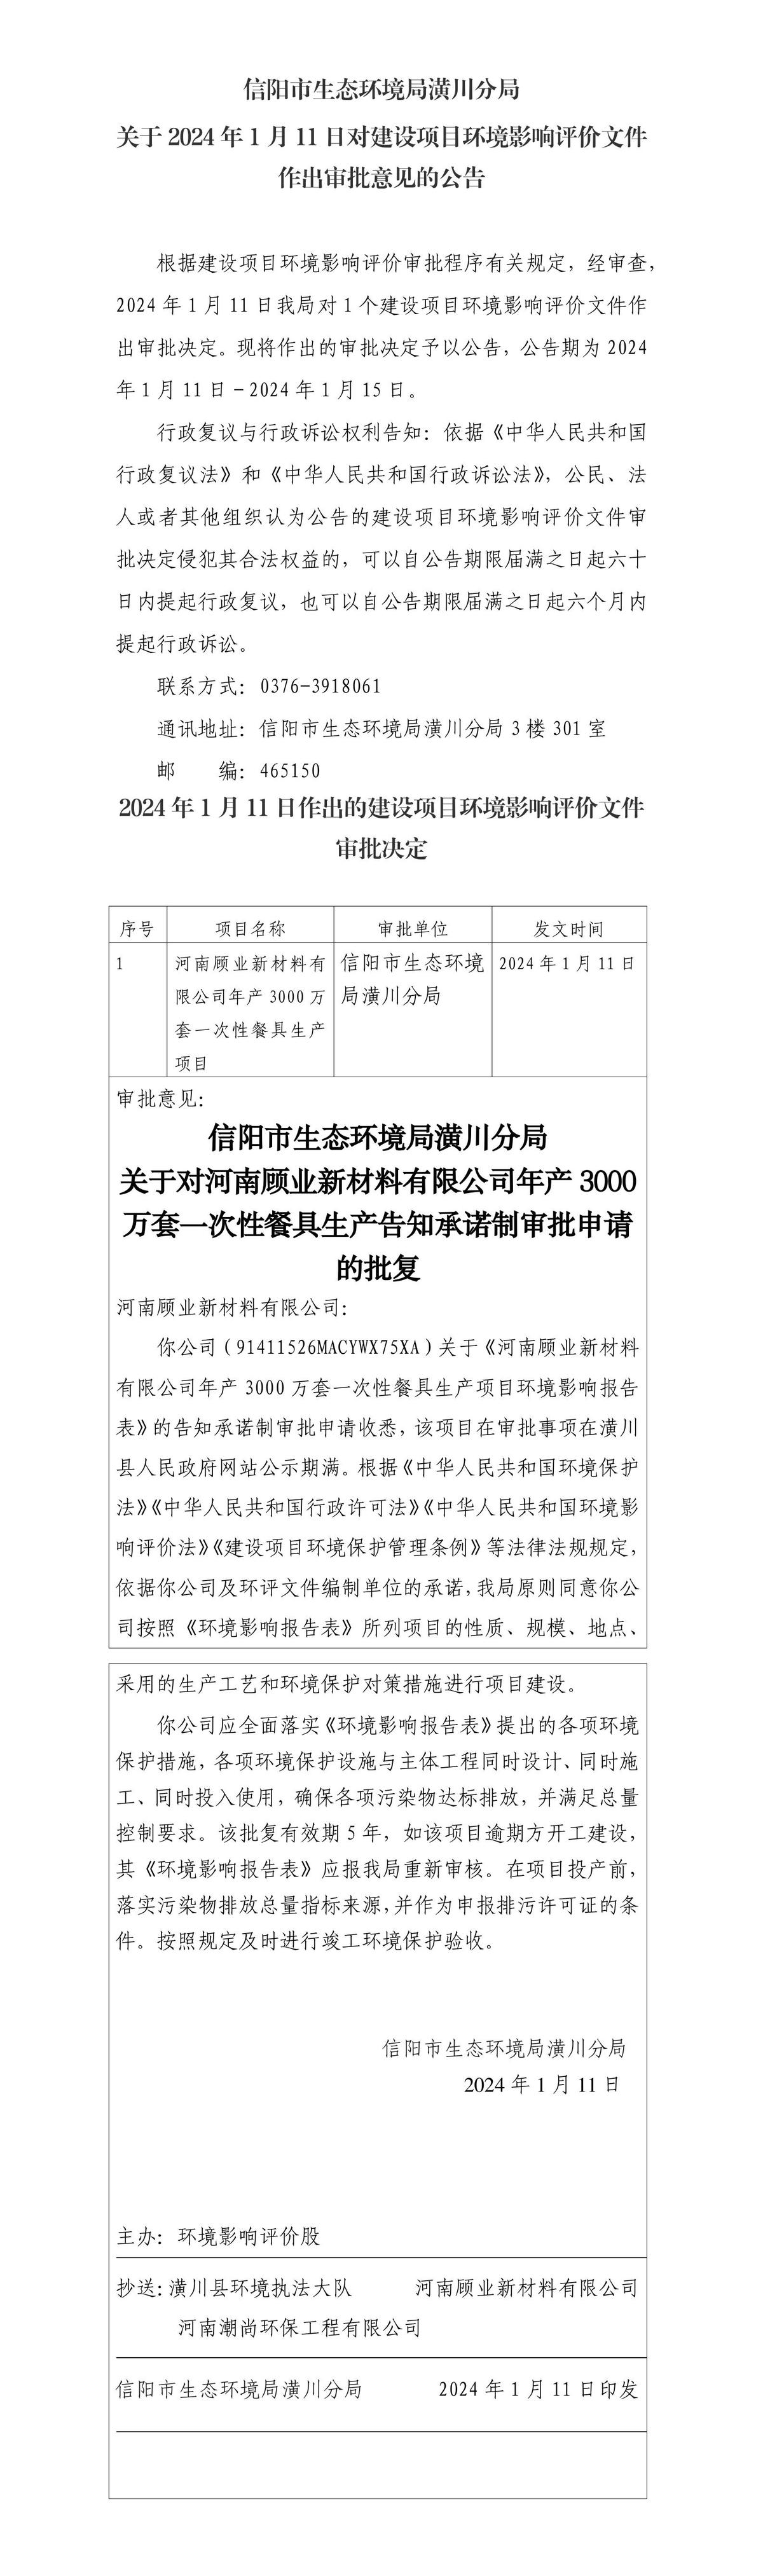 信阳市生态环境局潢川分局 关于2024年1月11日对建设项目环境影响评价文件作出审批意见的公告